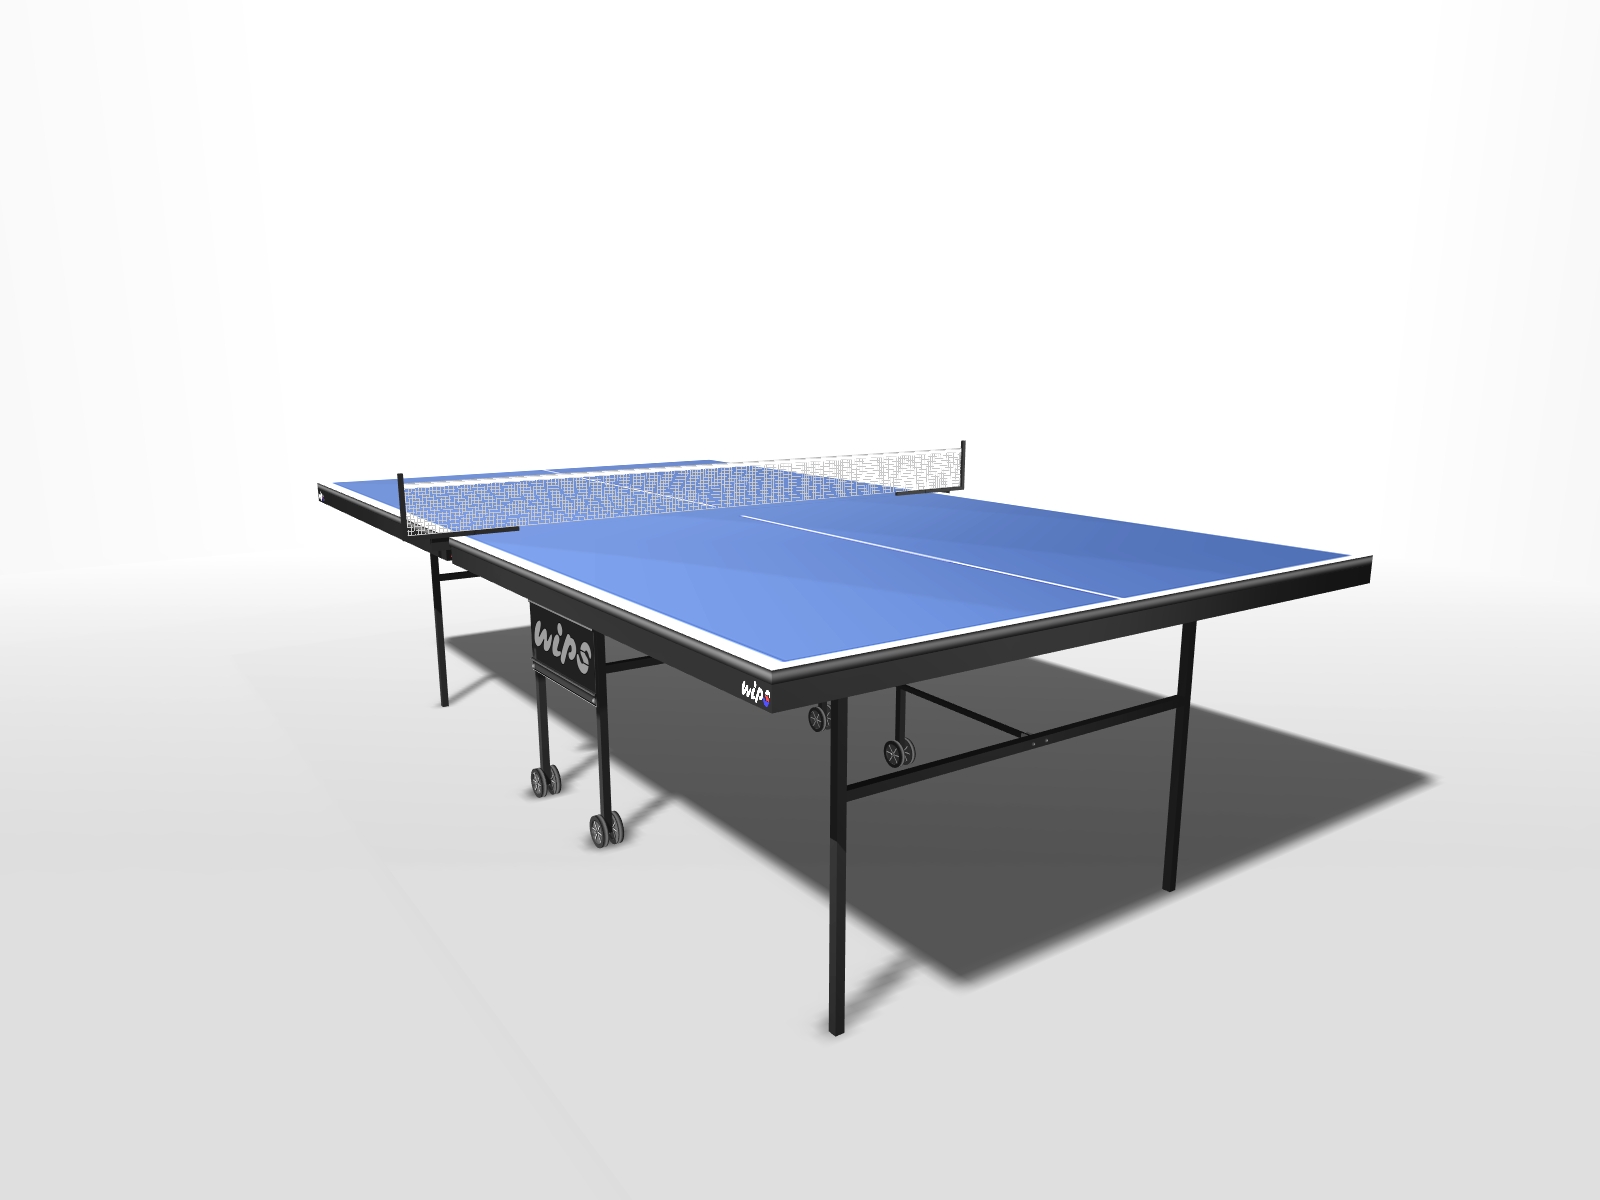 стол для настольного тенниса start line game outdoor